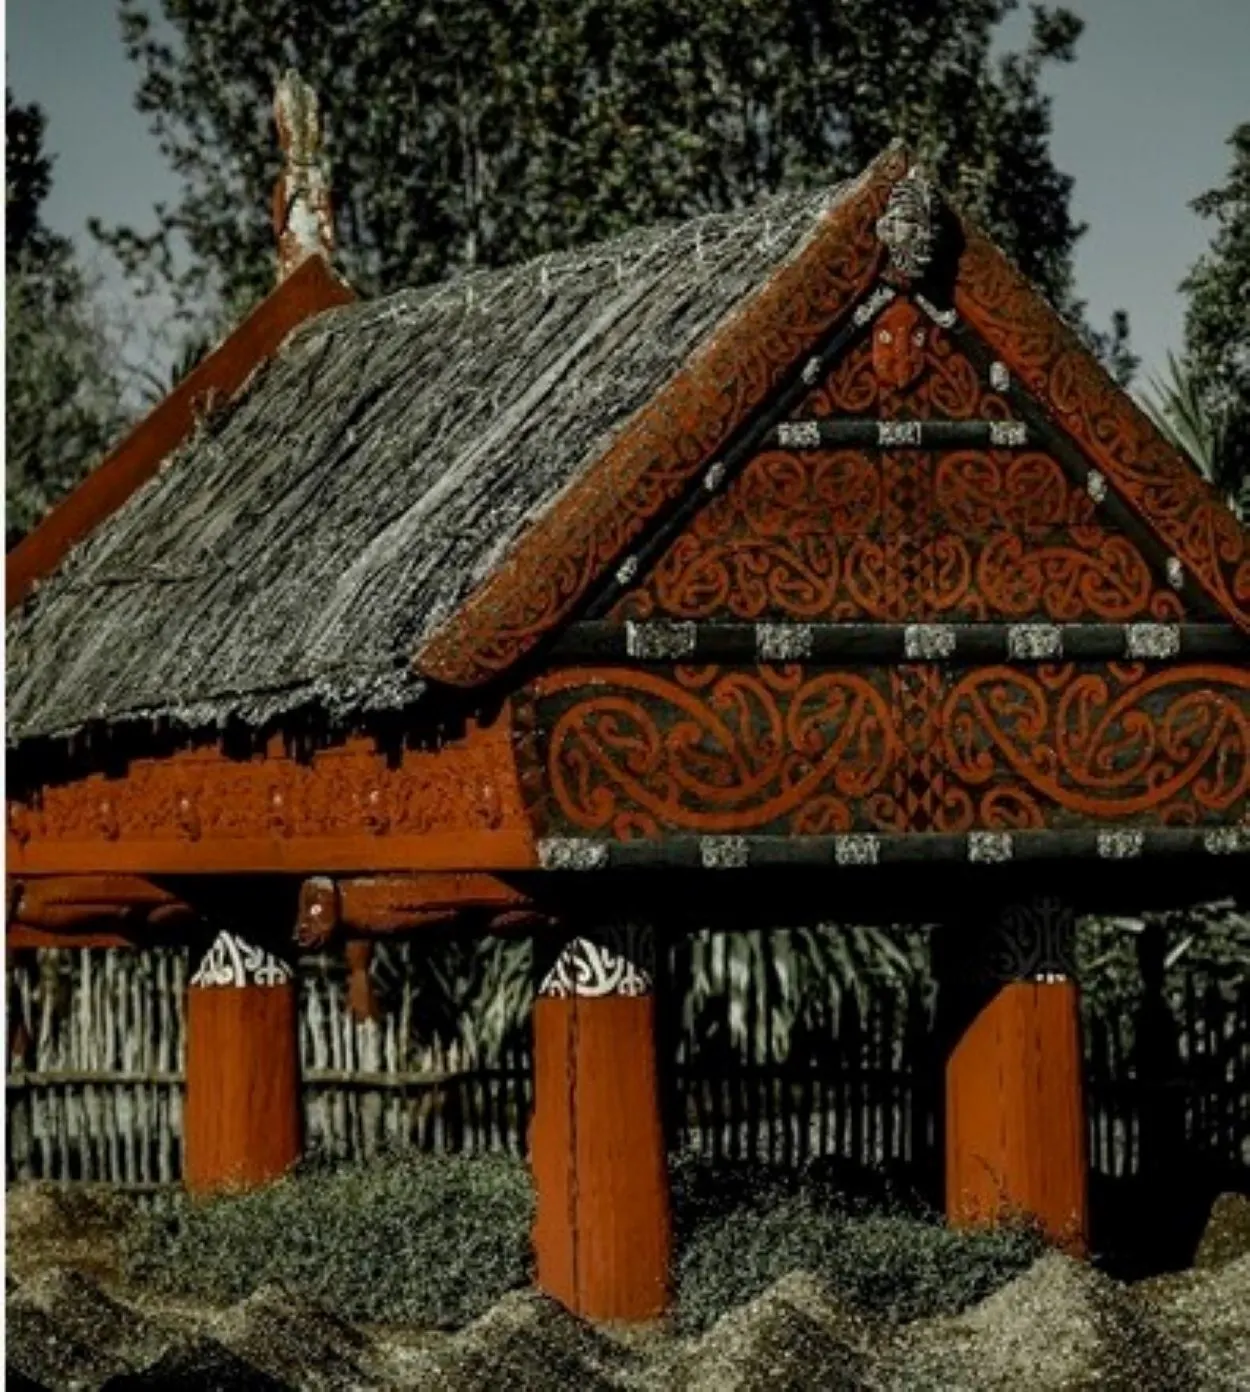  Wat is het verschil tussen Samoaans, Maori en Hawaiiaans? (besproken) - Alle Verschillen